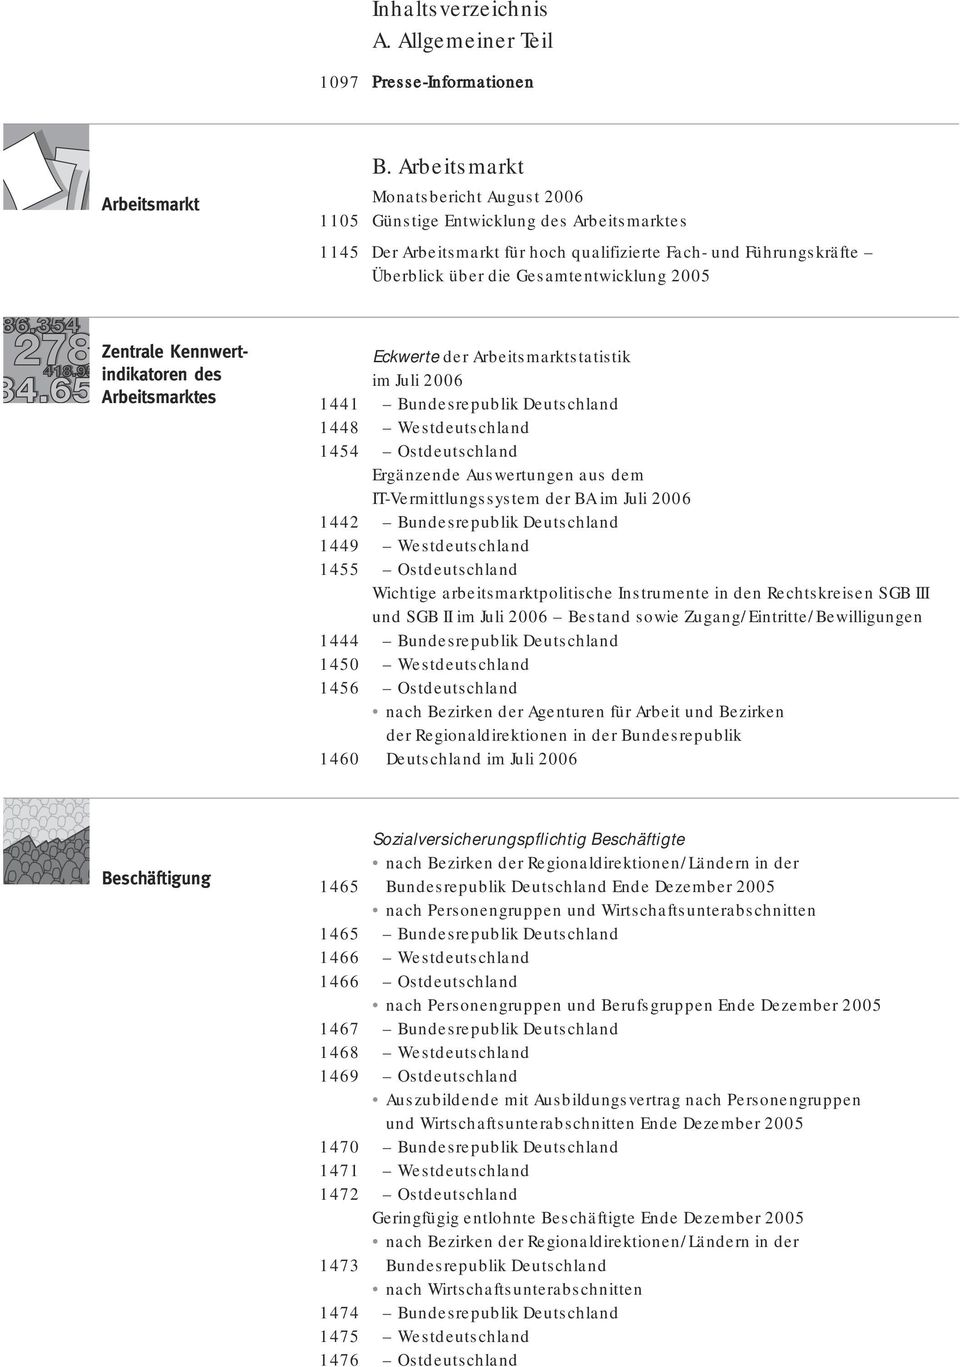 Zentrale Kennwertindikatoren des Arbeitsmarktes Eckwerte der Arbeitsmarktstatistik im Juli 2006 1441 Bundesrepublik Deutschland 1448 Westdeutschland 1454 Ostdeutschland Ergänzende Auswertungen aus